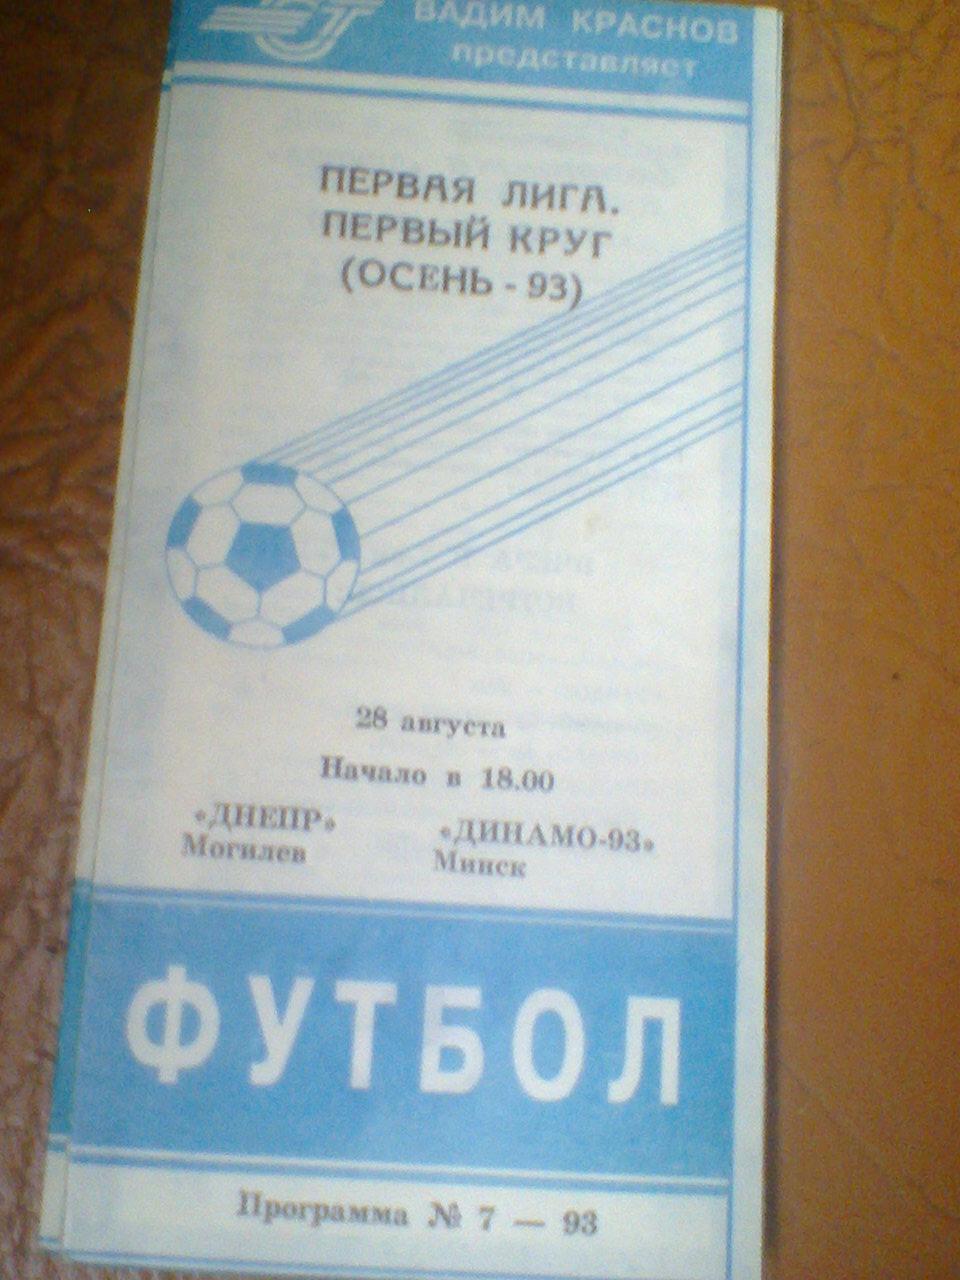 28.08.1993--Днепр Могилев--Динамо-93 Минск